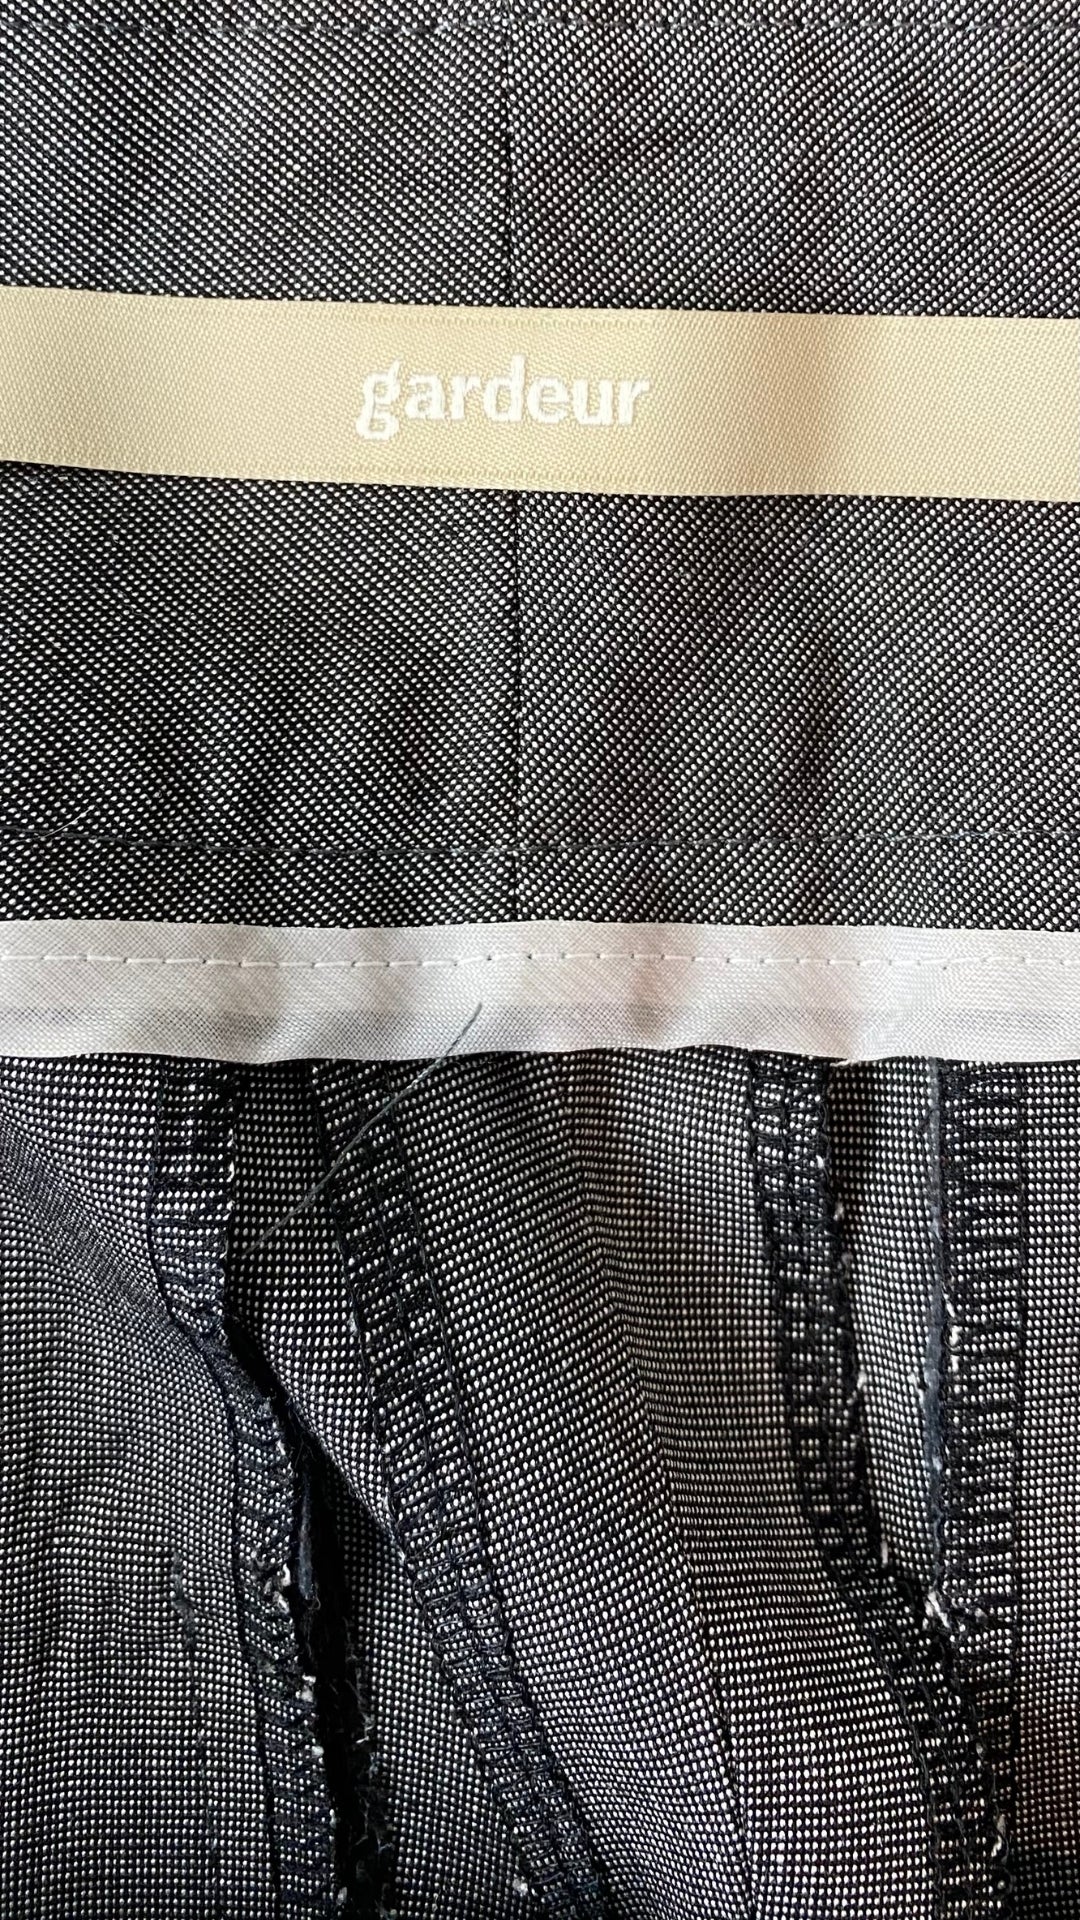 Pantalon gris droit fluide Gardeur, taille estimée à 6. Vue de l'étiquette de marque.